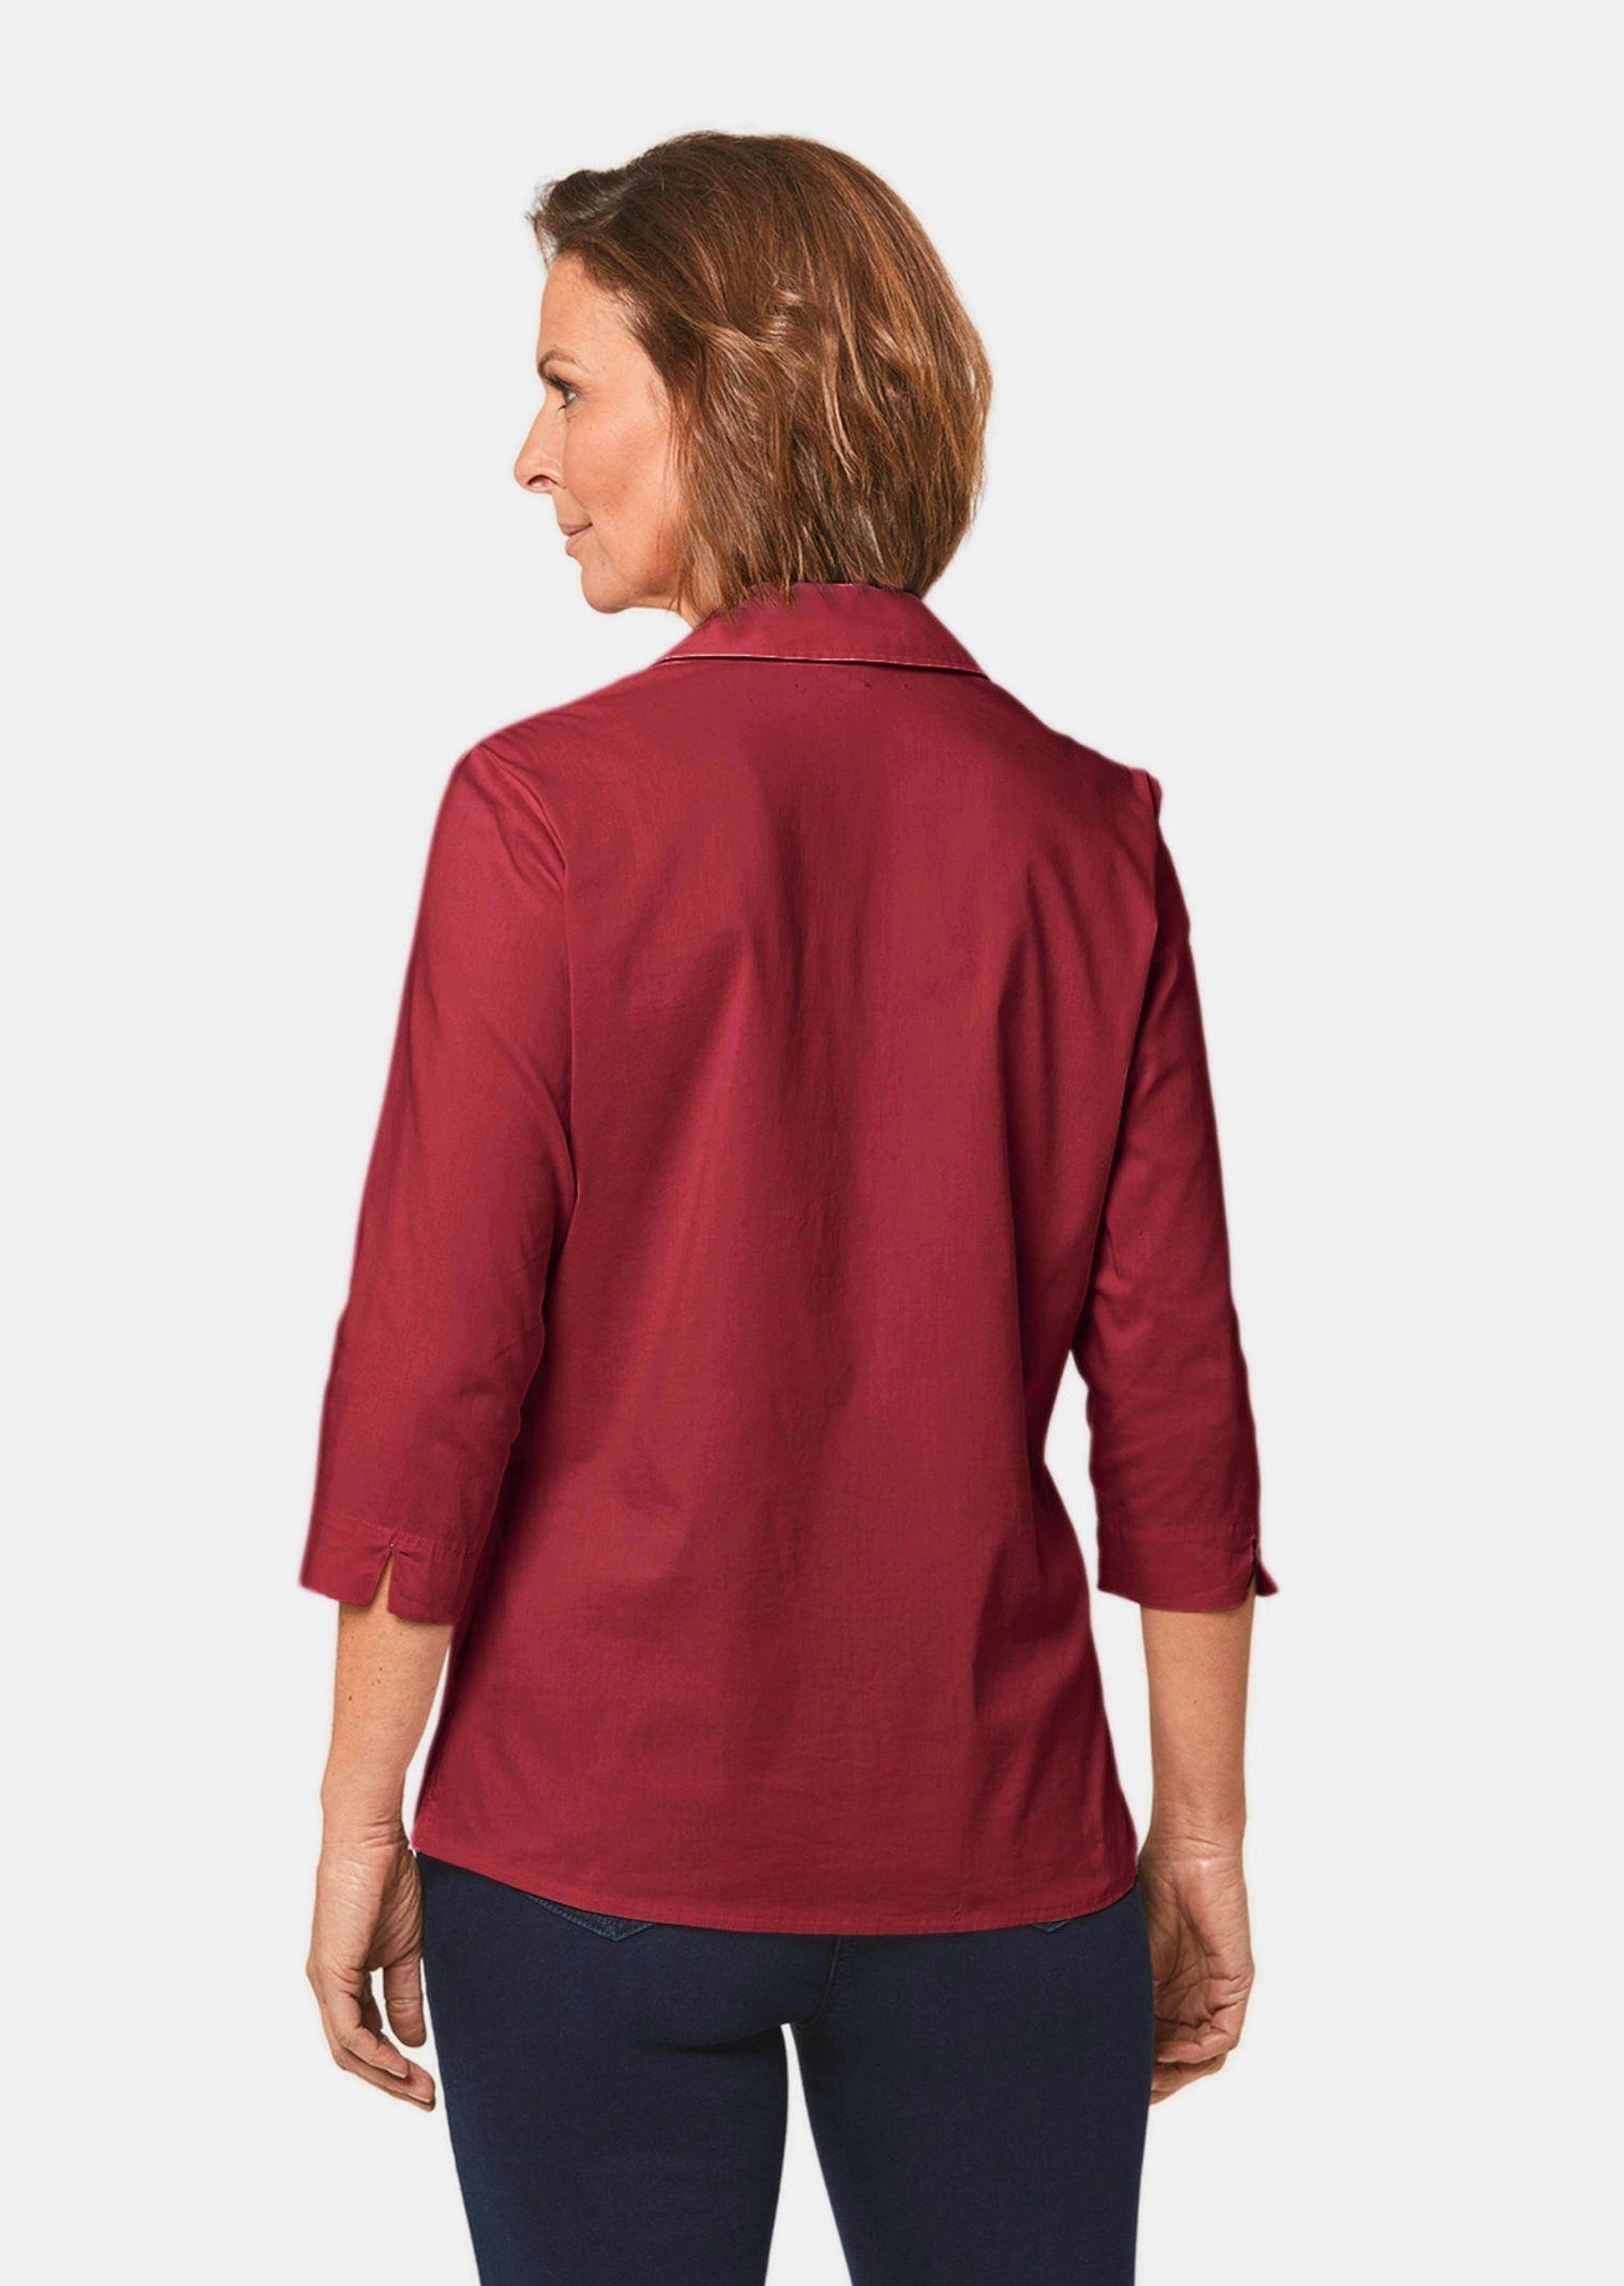 GOLDNER Hemdbluse Kurzgröße: Bluse mit Baumwolle Stretchbequeme dunkelrot